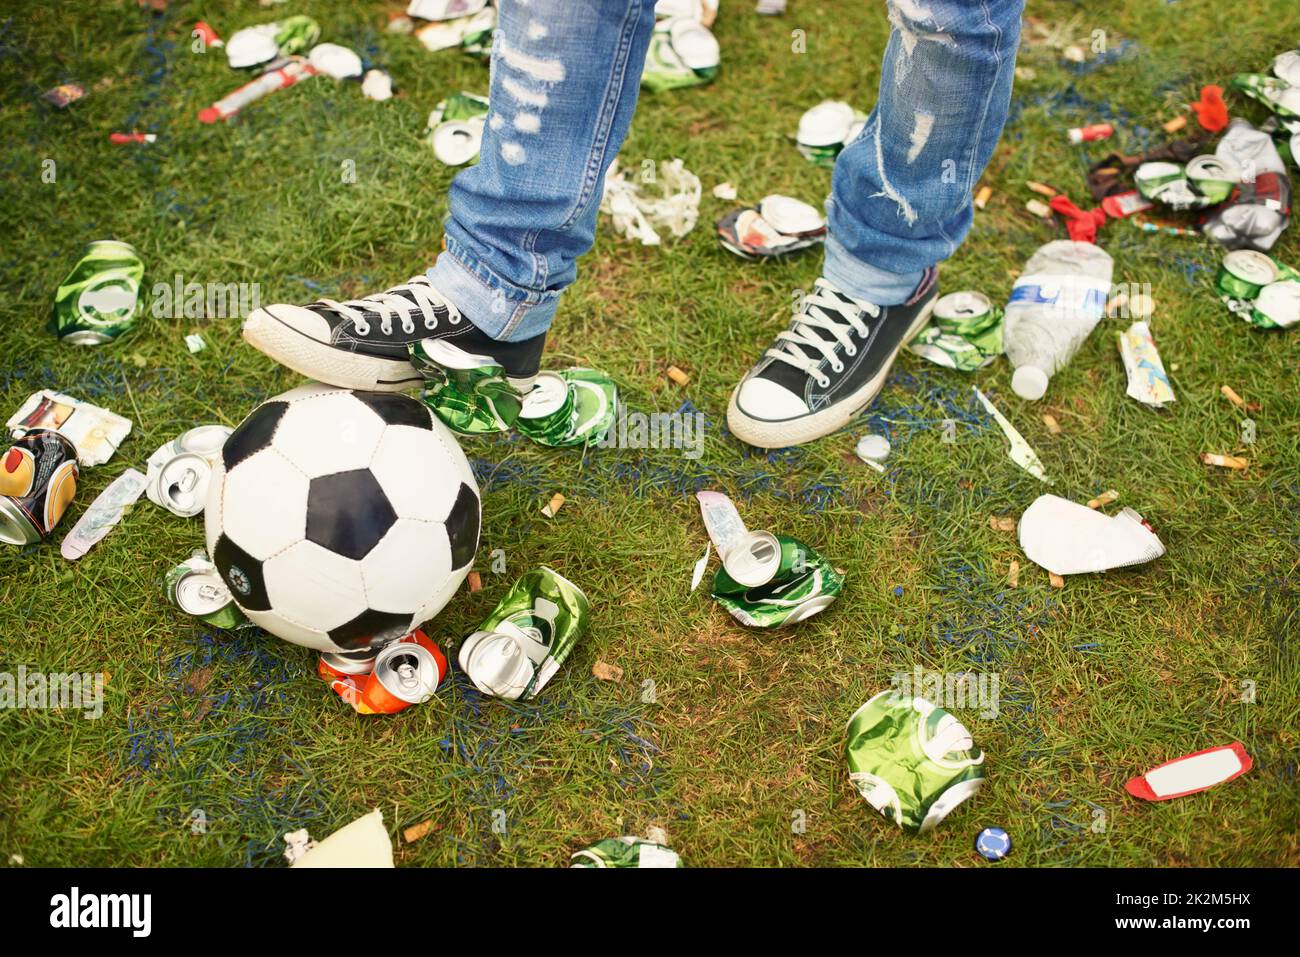 Coup de pied dans les suites. Une personne jouant avec un football au milieu des détritus laissés à un festival de musique. Banque D'Images